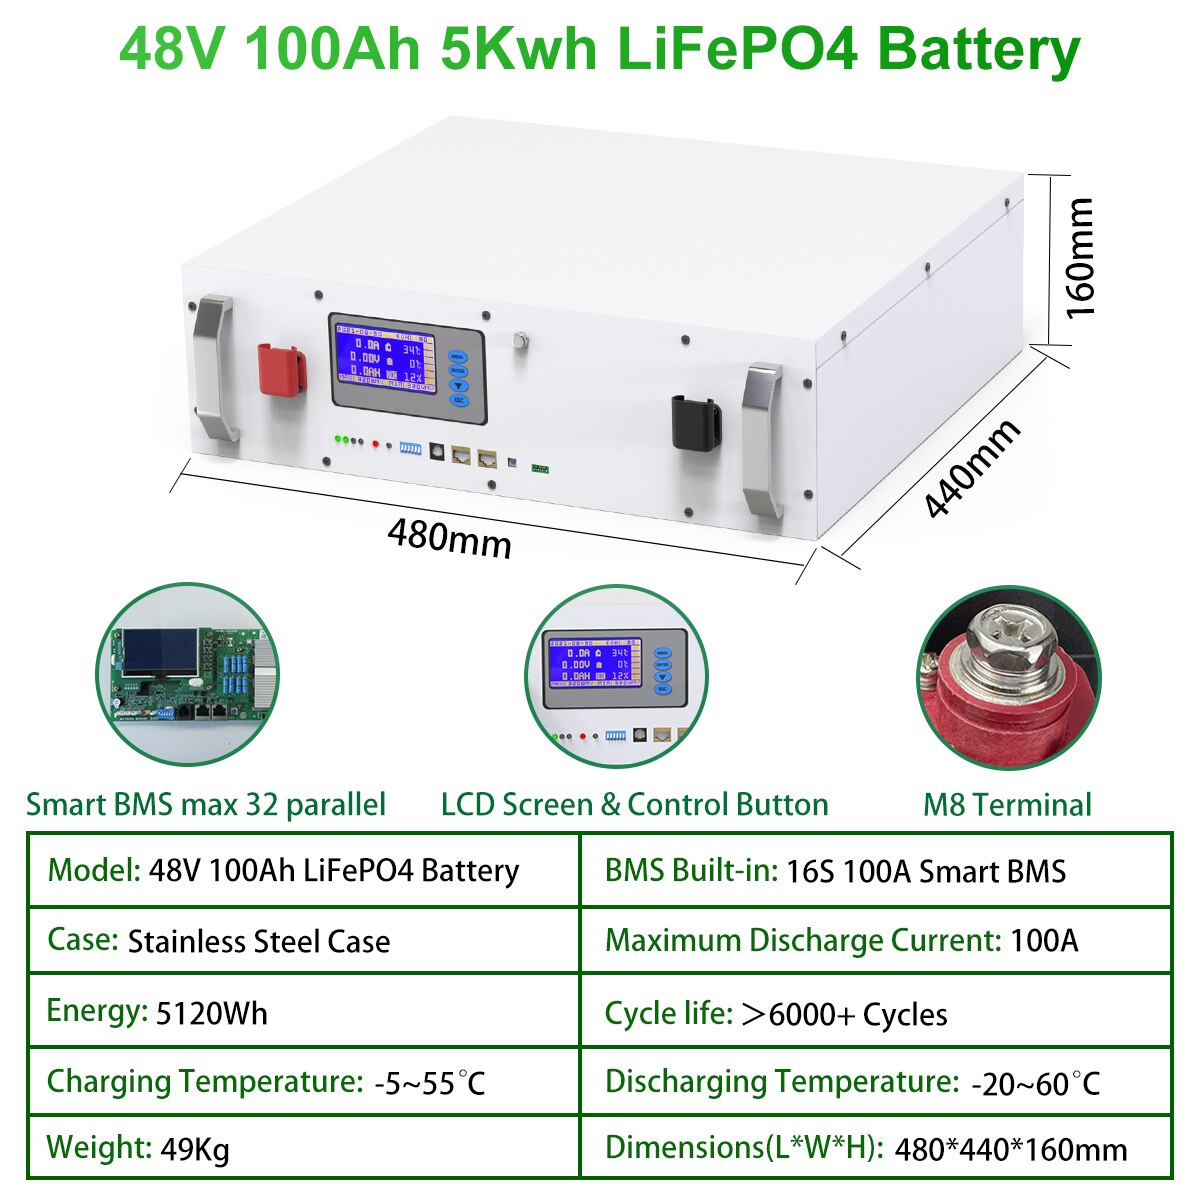 Bateria Powerwall 48V 100Ah 200Ah LiFePO4 - 6000 ciclos 5Kw 10KW 16S 51.2V BMS RS485 CAN BUS PC Monitor para sistema fotovoltaico desligado/ligado à rede